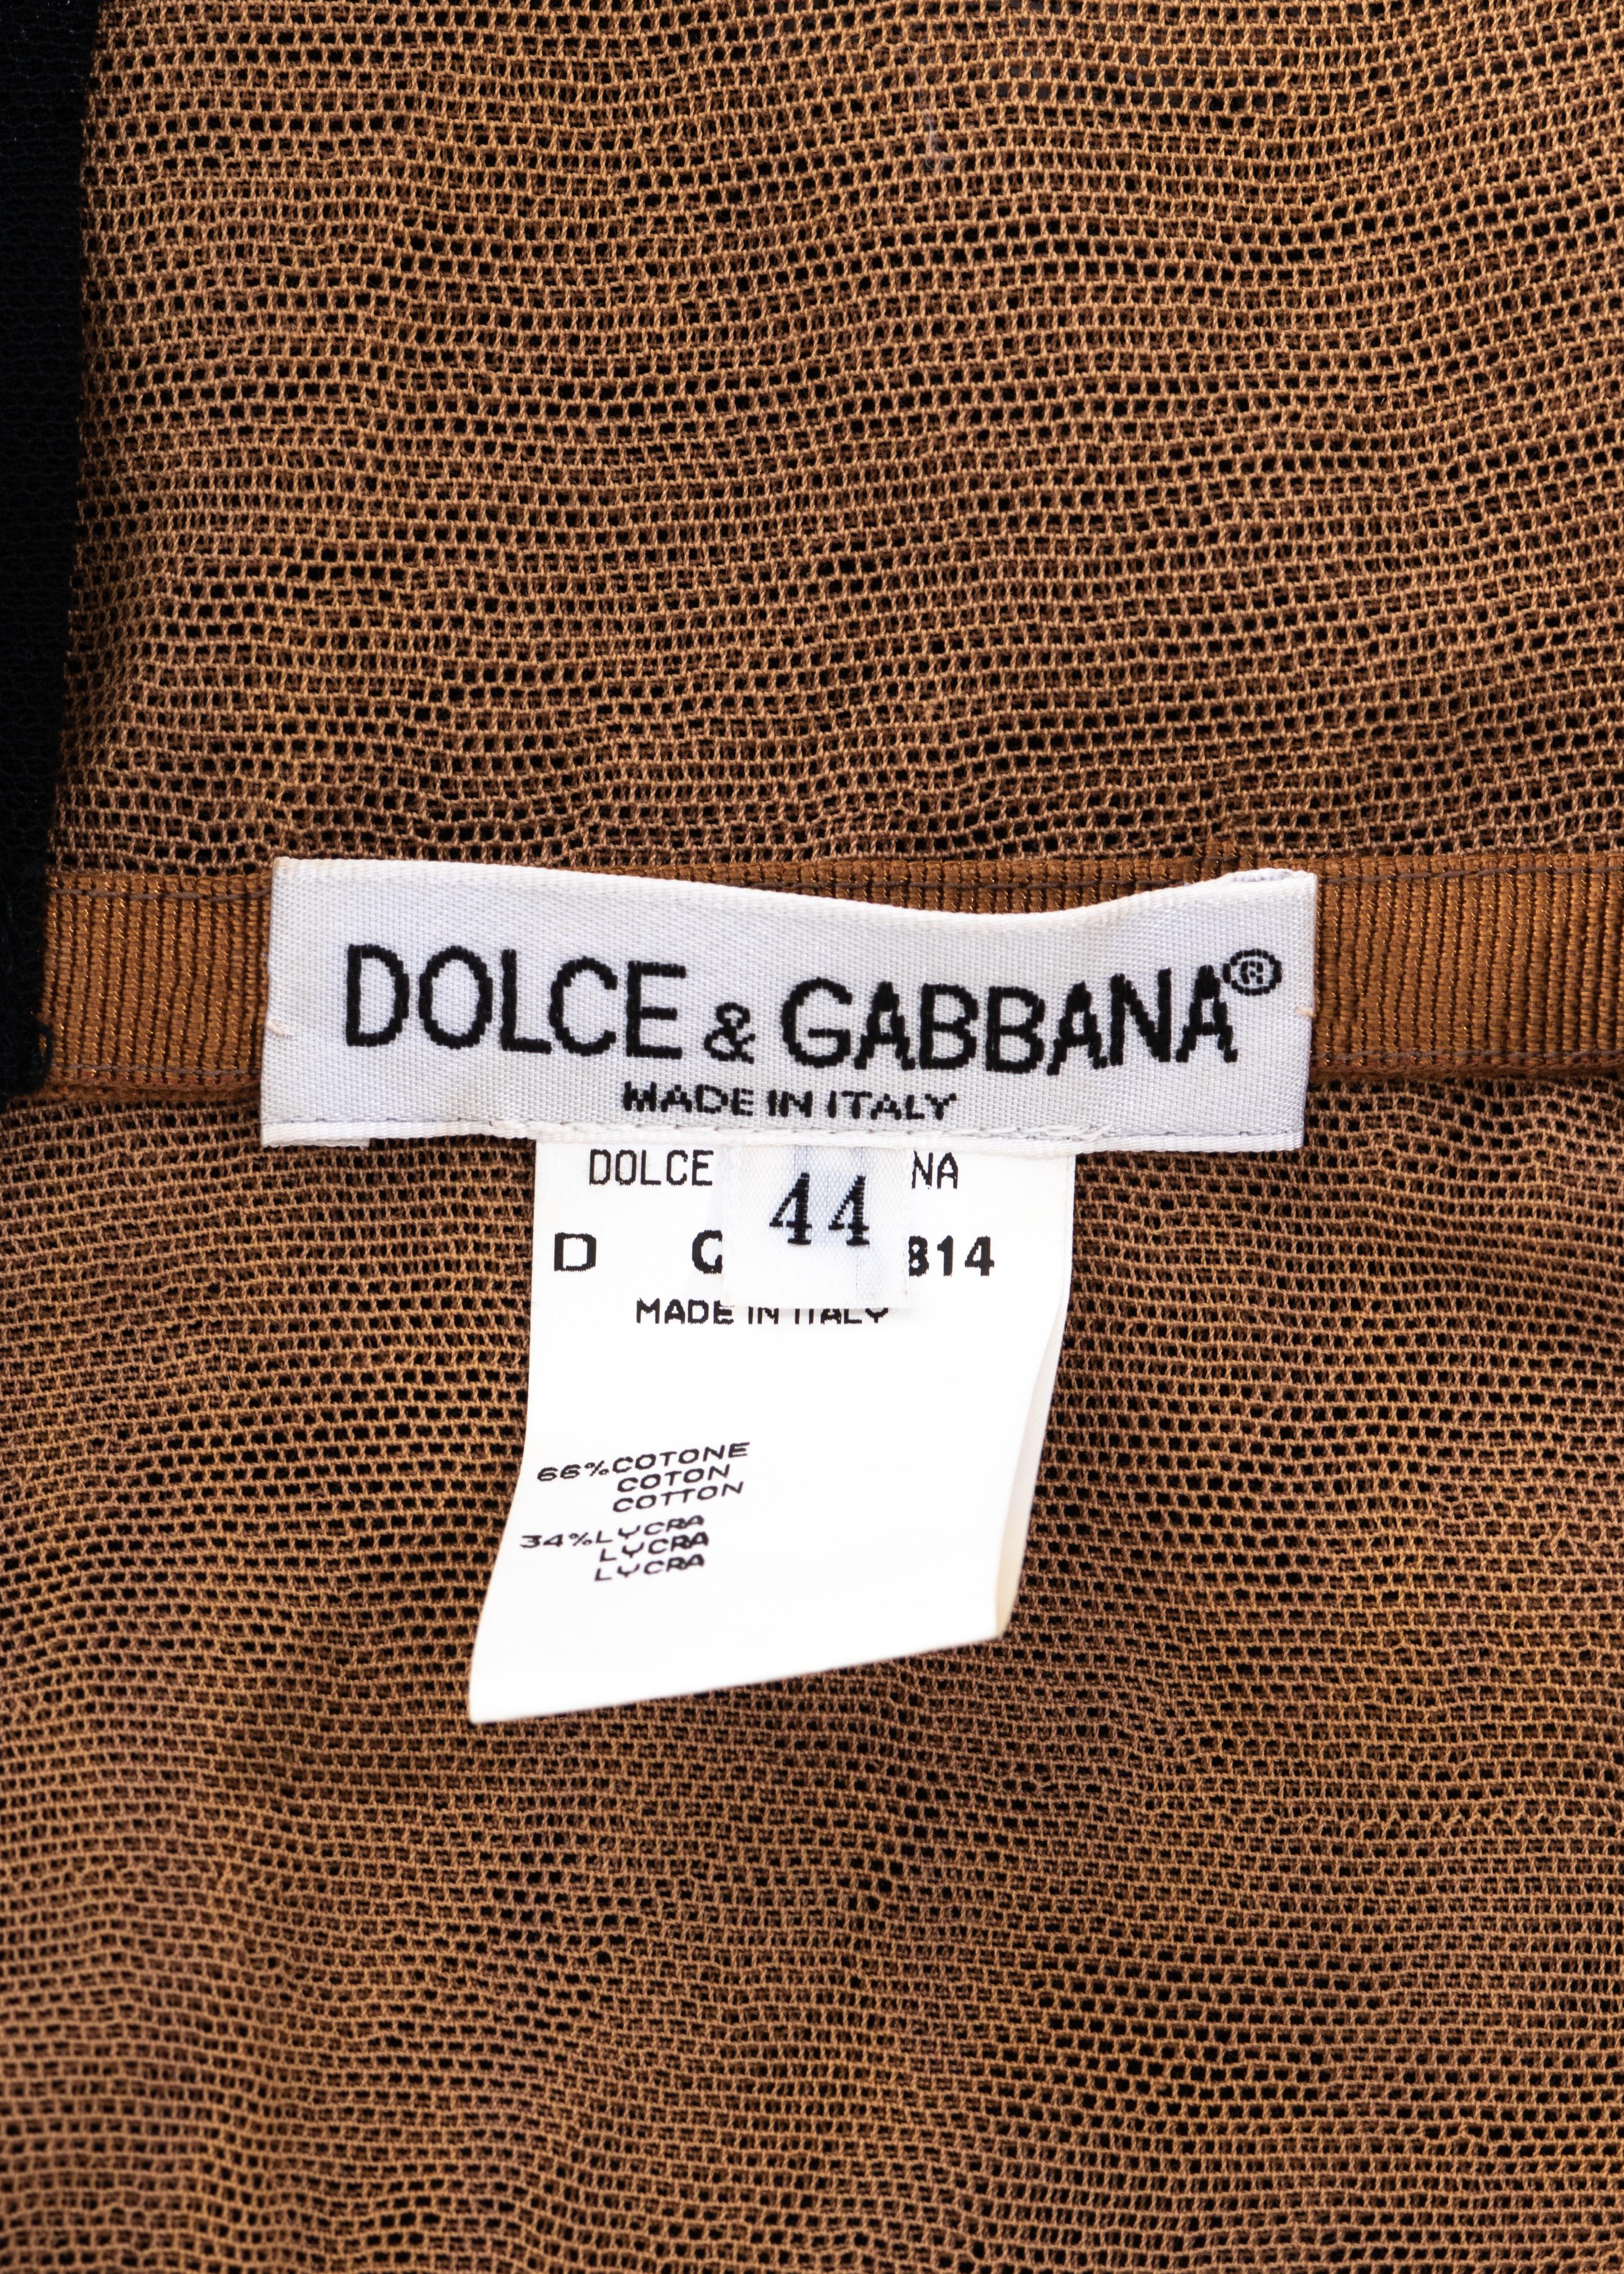 Dolce & Gabbana black mesh butterfly corseted evening dress, ss 1998 4